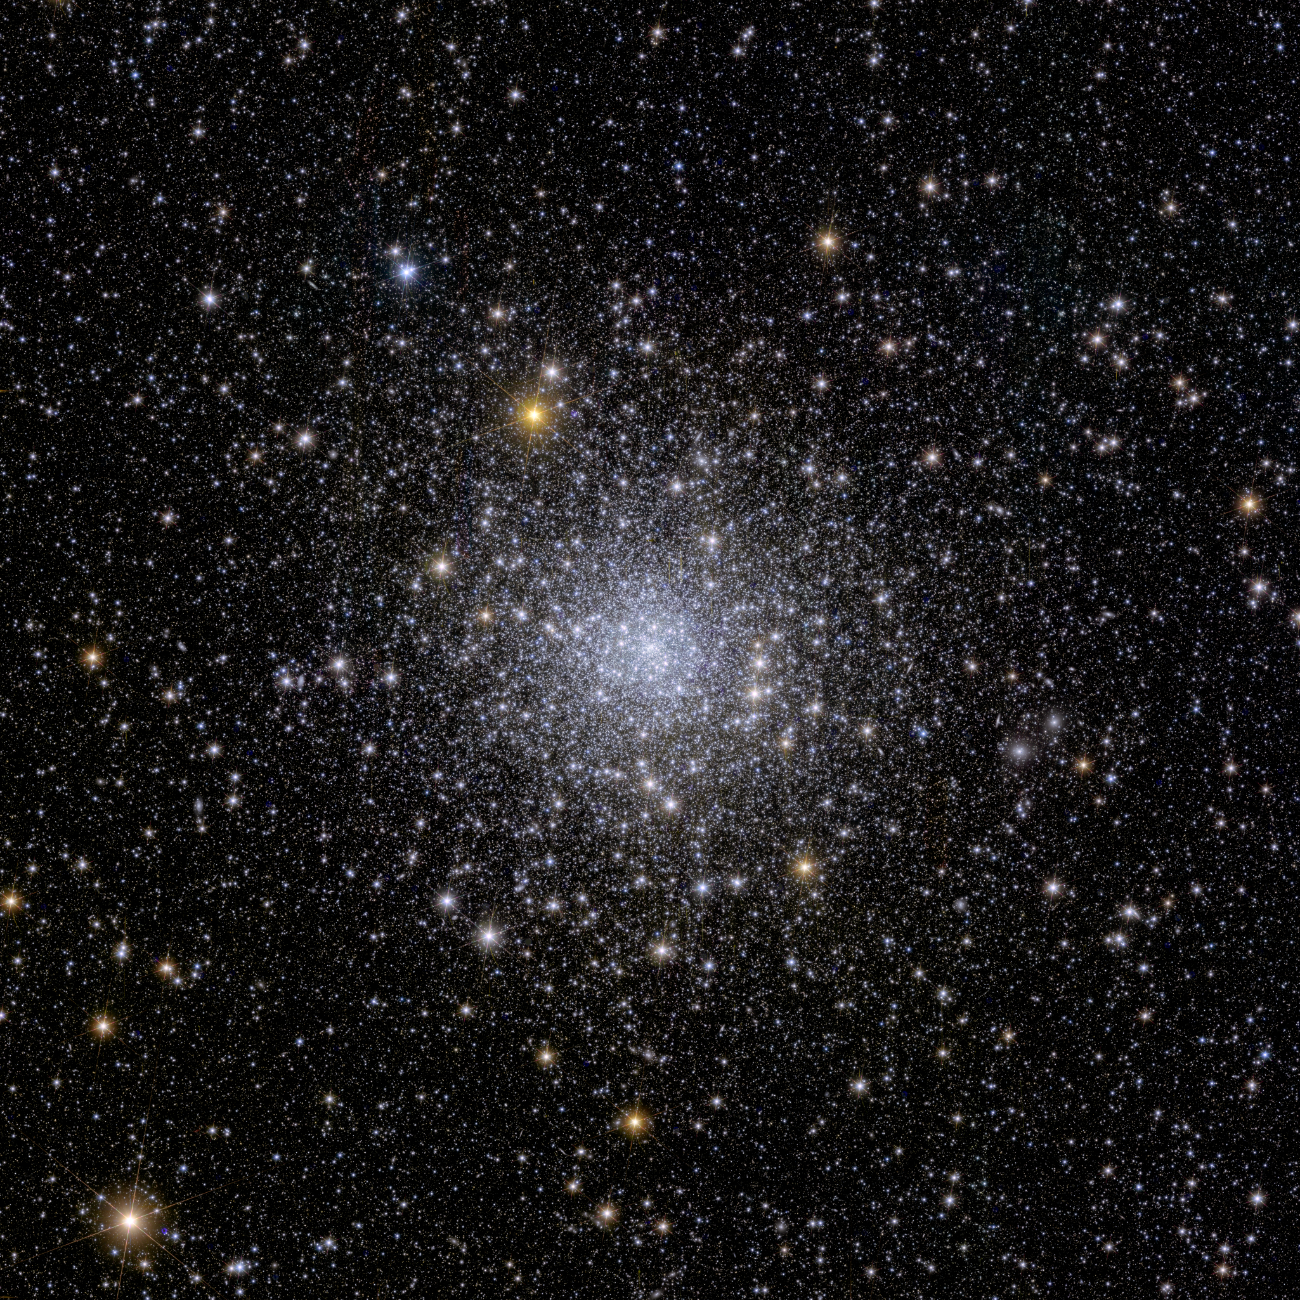 L'amas globulaire NGC 6397 est situé à environ 7800 années-lumière de la Terre: c'est le plus proche de nous. [ESA/Euclid/Euclid Consortium/NASA - image processing J.-C. Cuillandre (CEA Paris-Saclay), G. Anselmi; CC BY-SA 3.0 IGO]